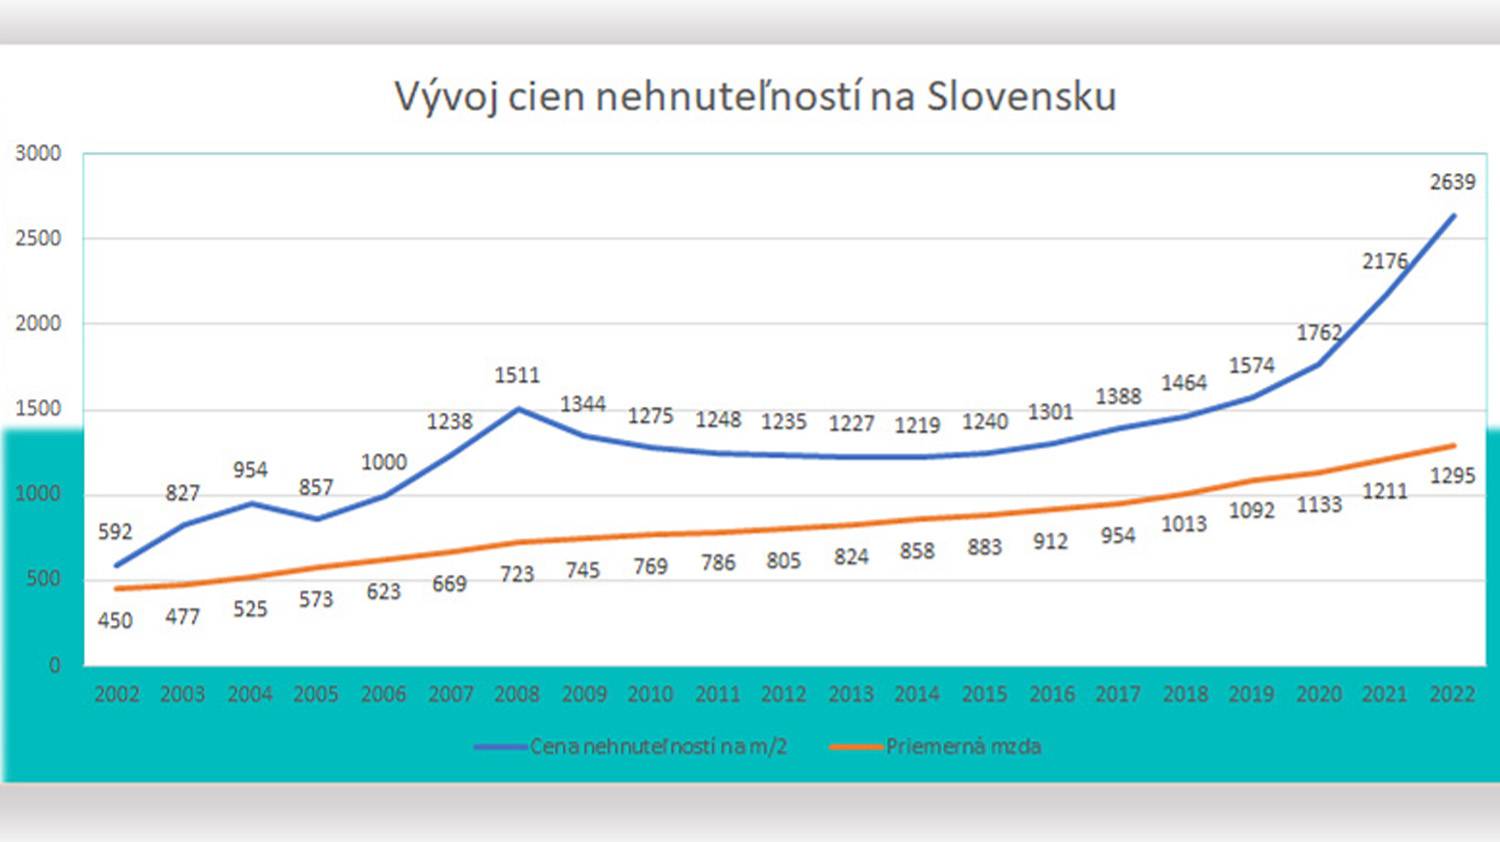 Vývoj cien nehnuteľností na Slovensku.